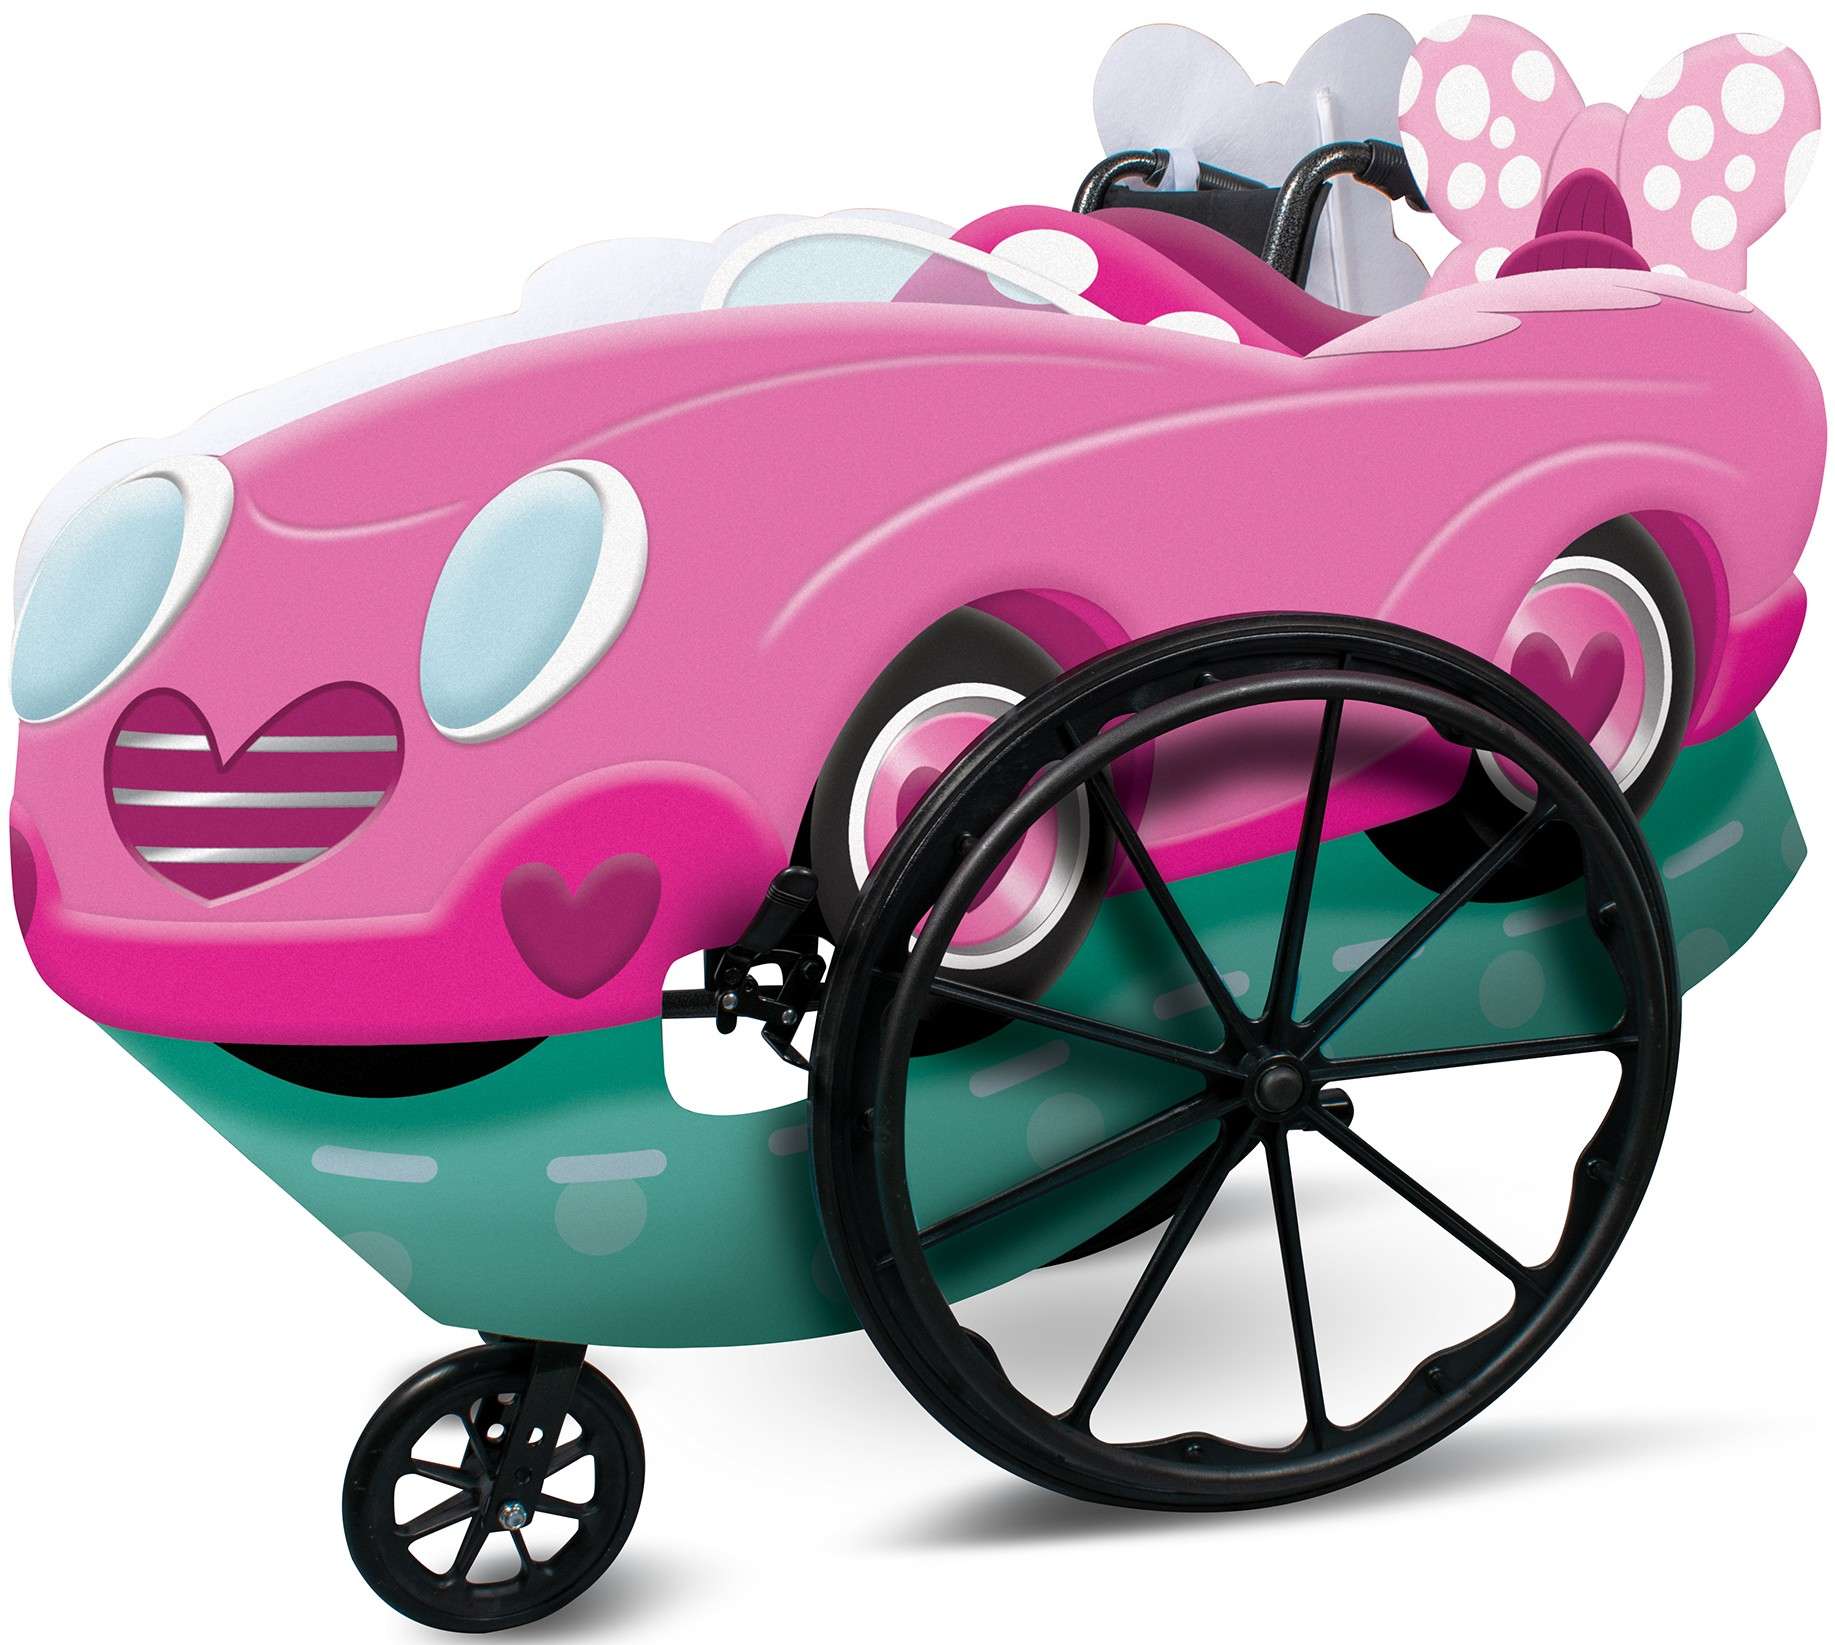 Strj karnawaowy Disney pojazd Myszka Minnie na wzek inwalidzki